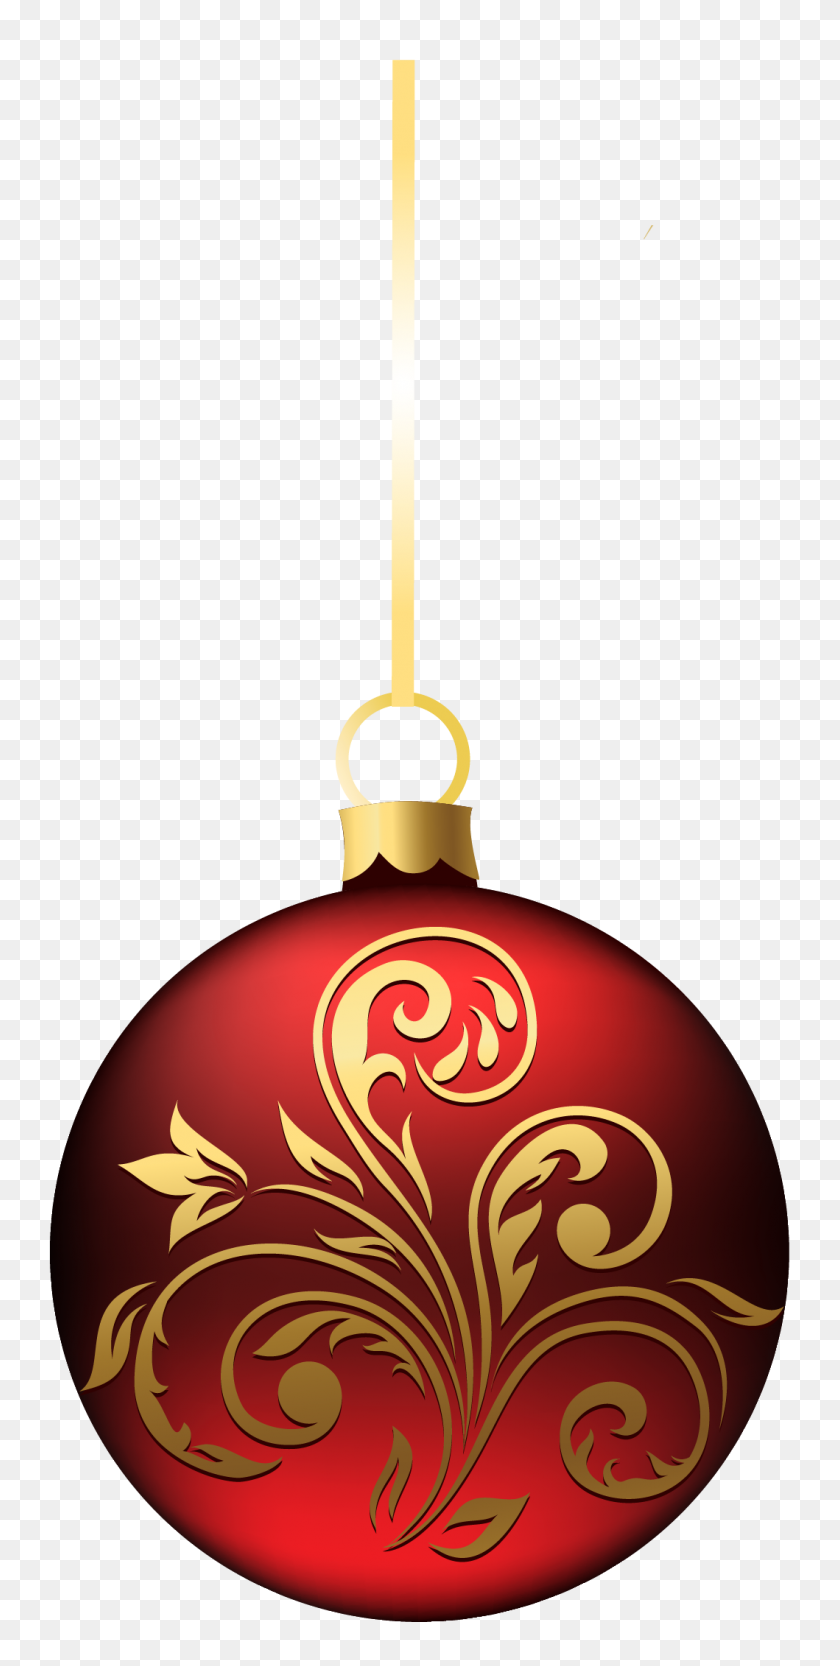 Free Islamic Ornament Png Vector Vector, Clipart - Ornament PNG ...